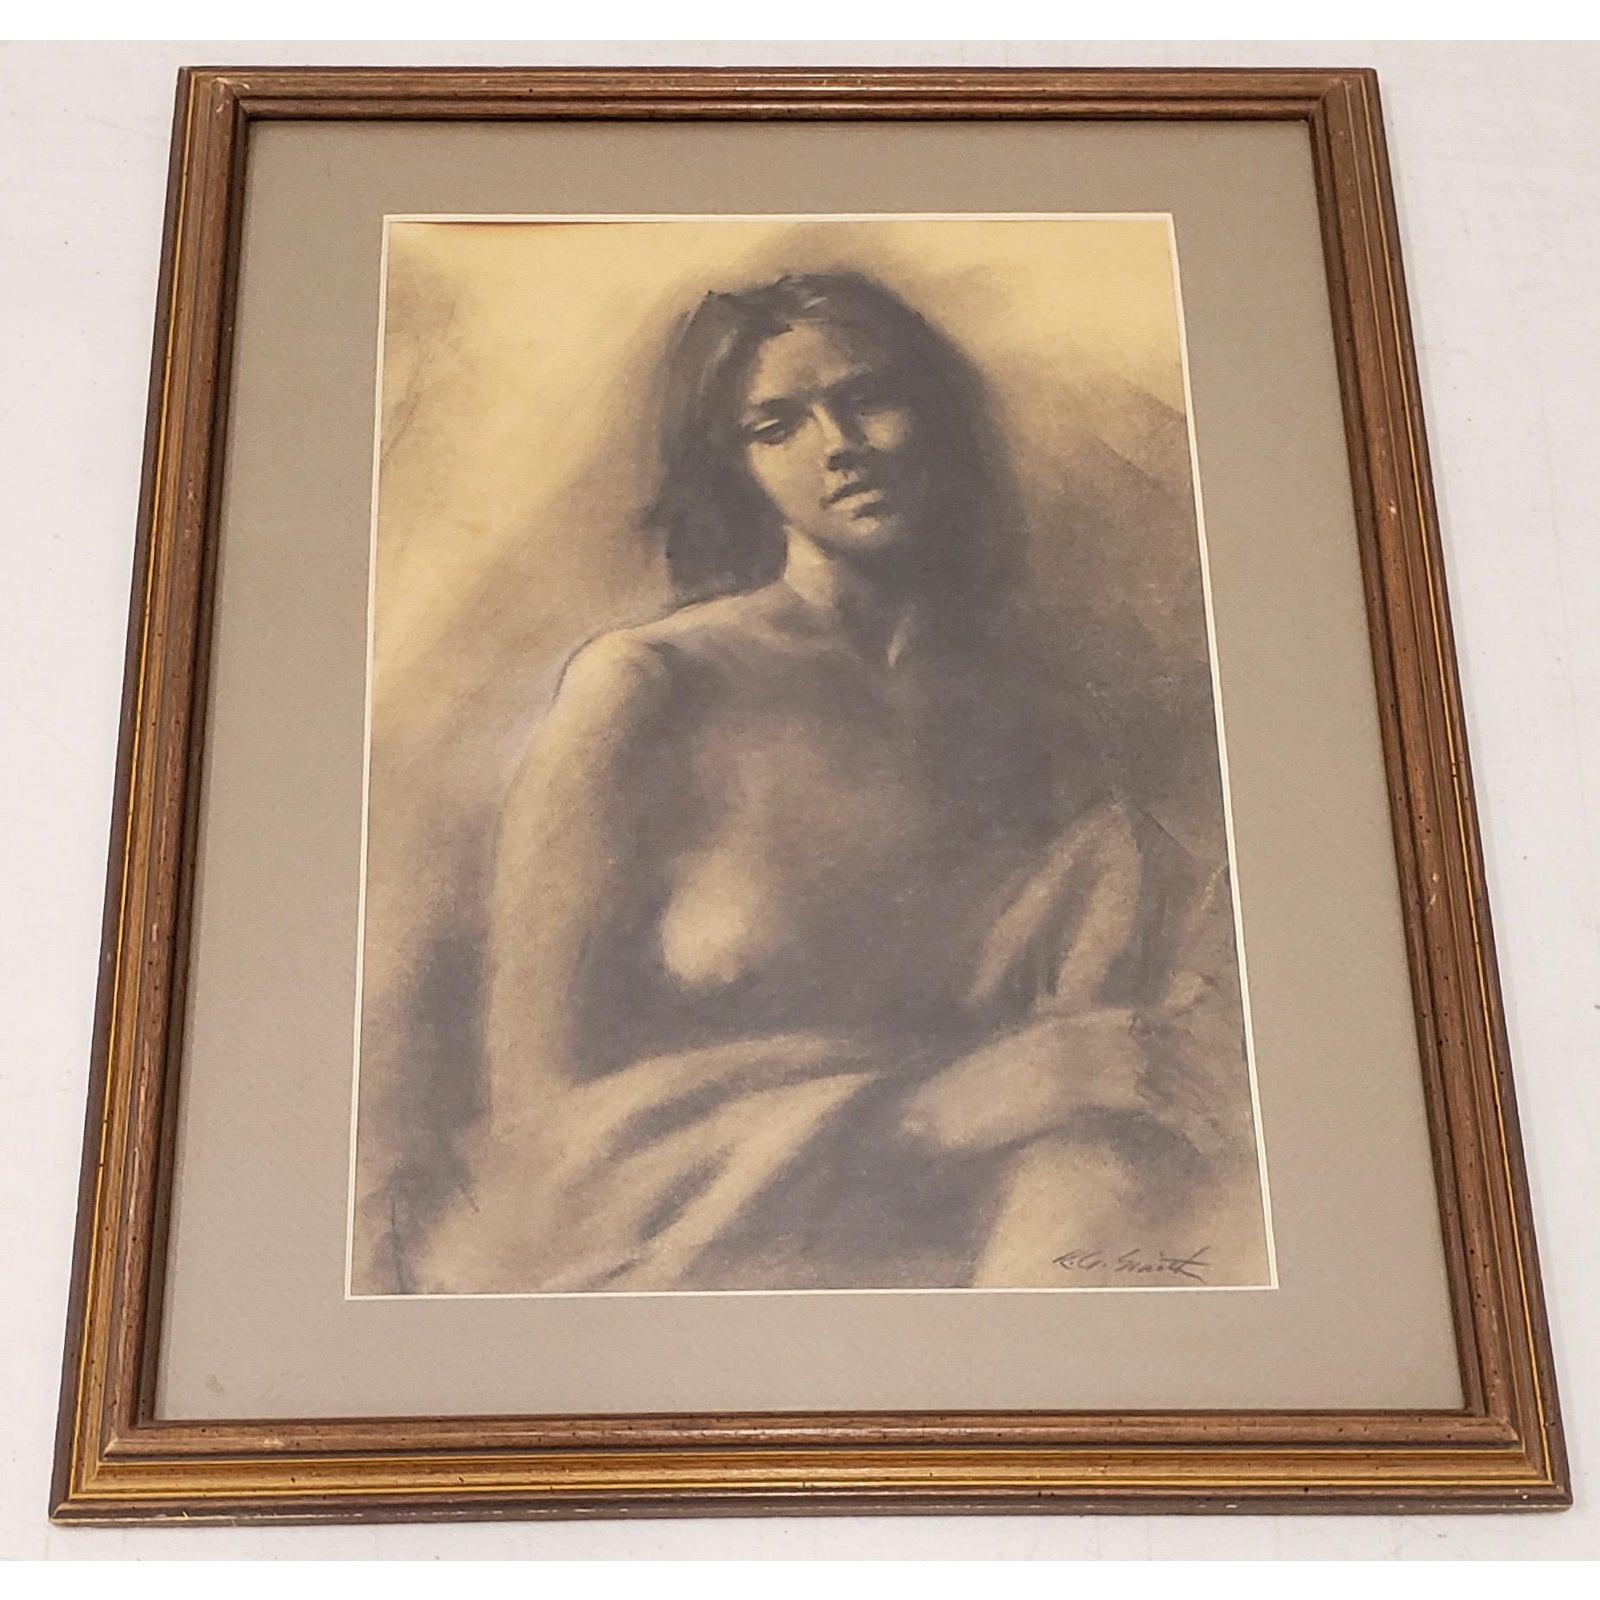 Beau portrait en graphite d'une belle jeune femme par R.G. Smith

Dimensions du portrait : 15,5